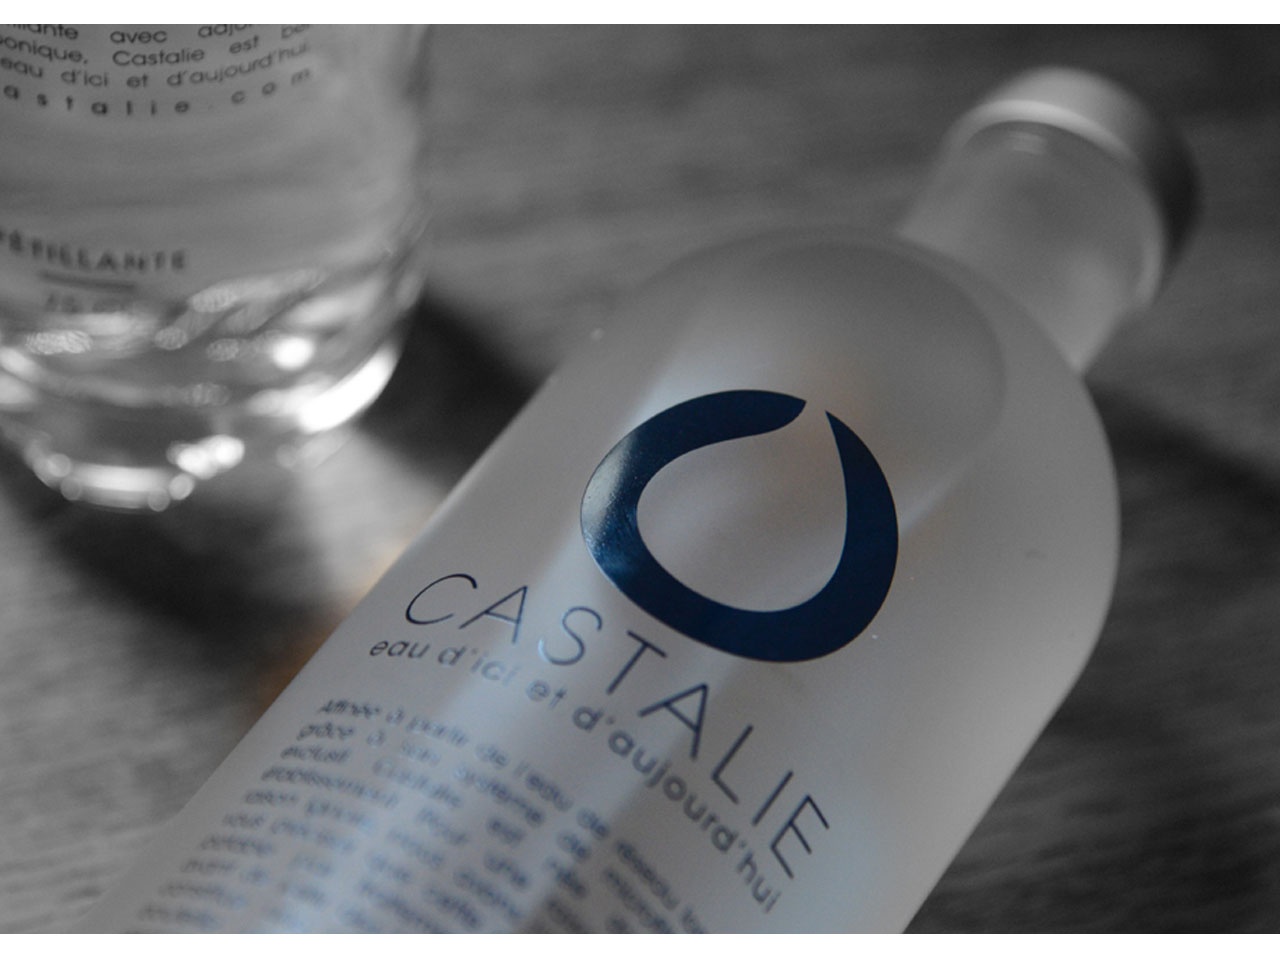 Sondage Castalie sur les Français : boivent-ils l’eau au robinet ou en bouteille ?